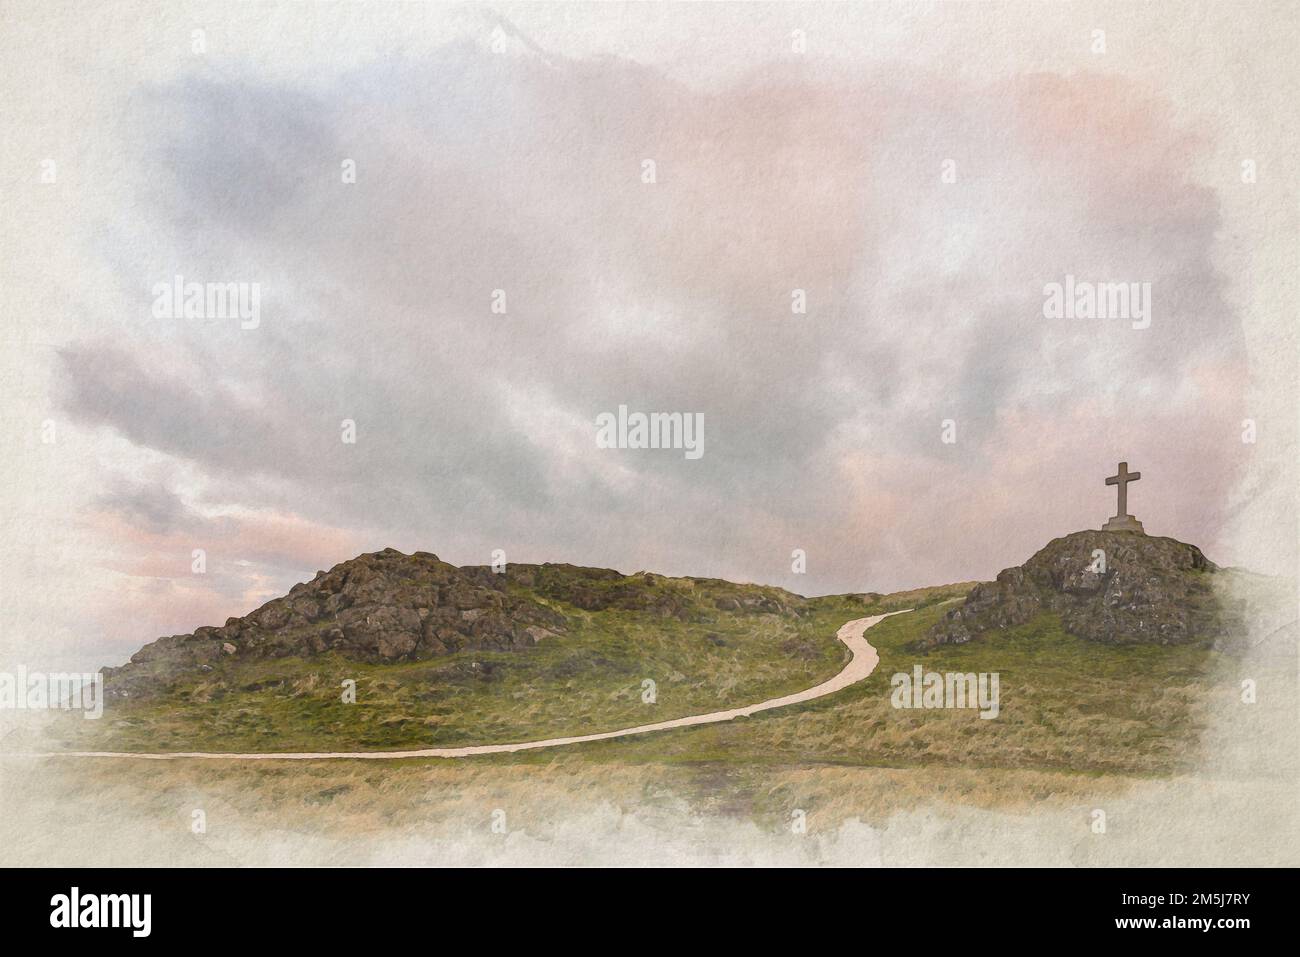 Un tableau d'aquarelle numérique de l'île de Llanddwyn traverse par Twr Mawr à Ynys Llanddwyn, Anglesey, pays de Galles, Royaume-Uni. Banque D'Images